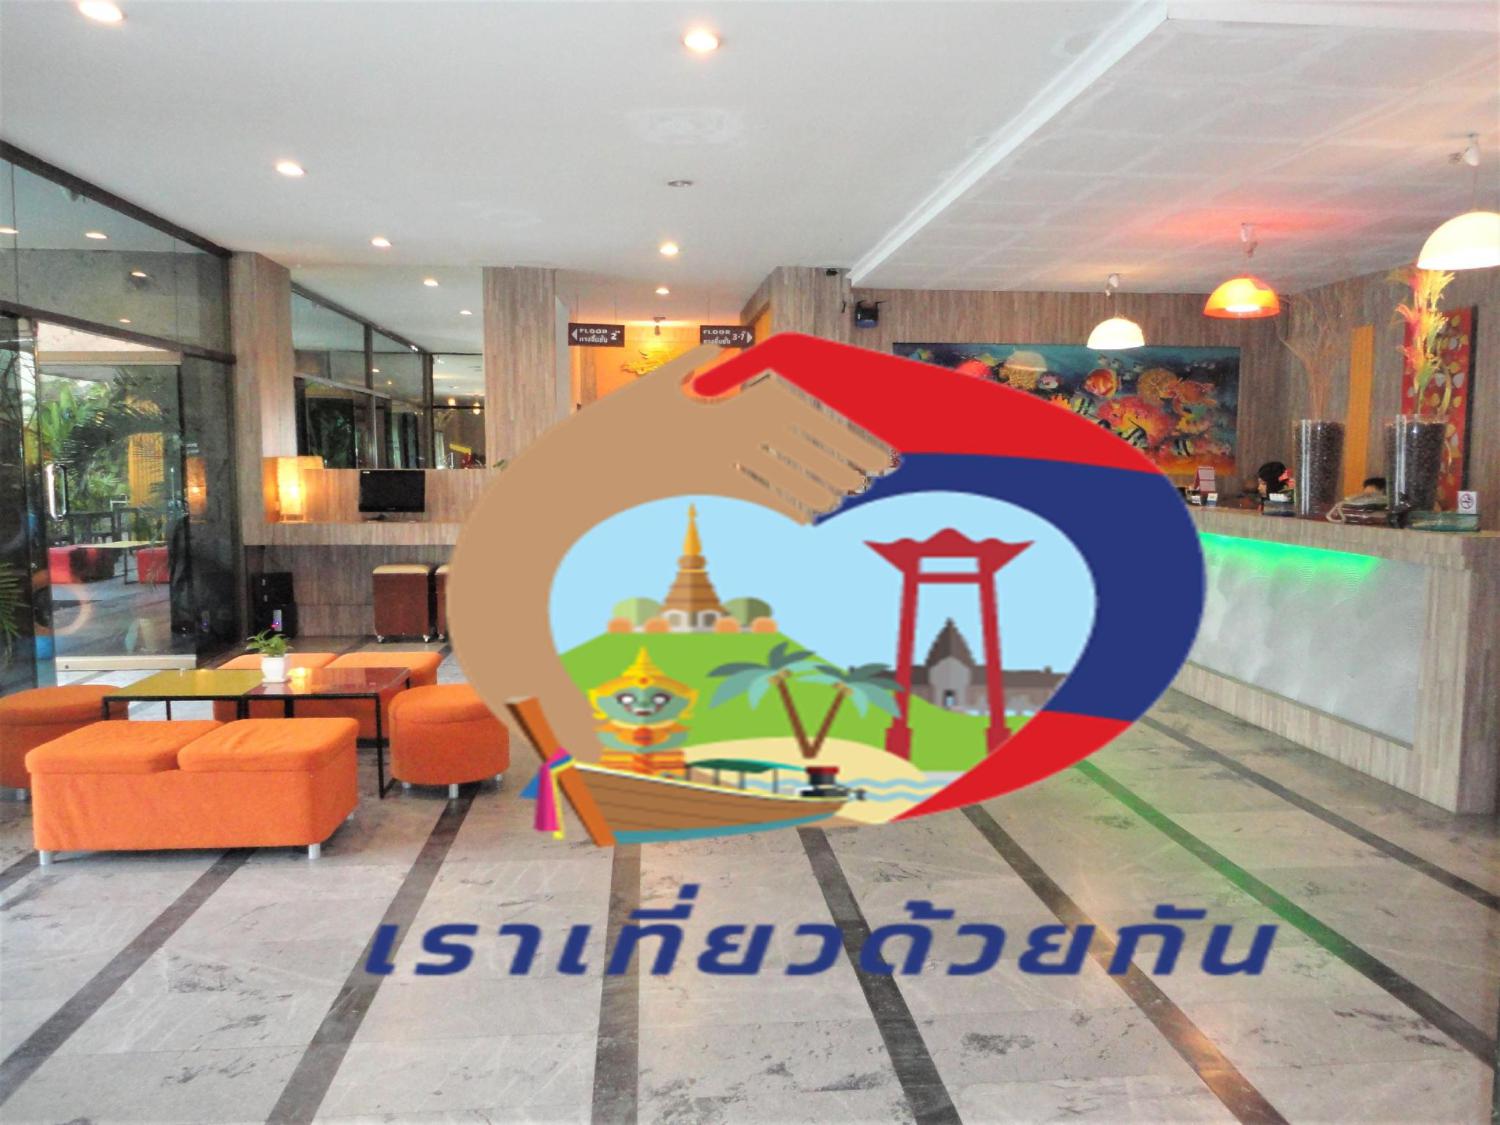 Lamoon Hotel @ Phuket - Image 2